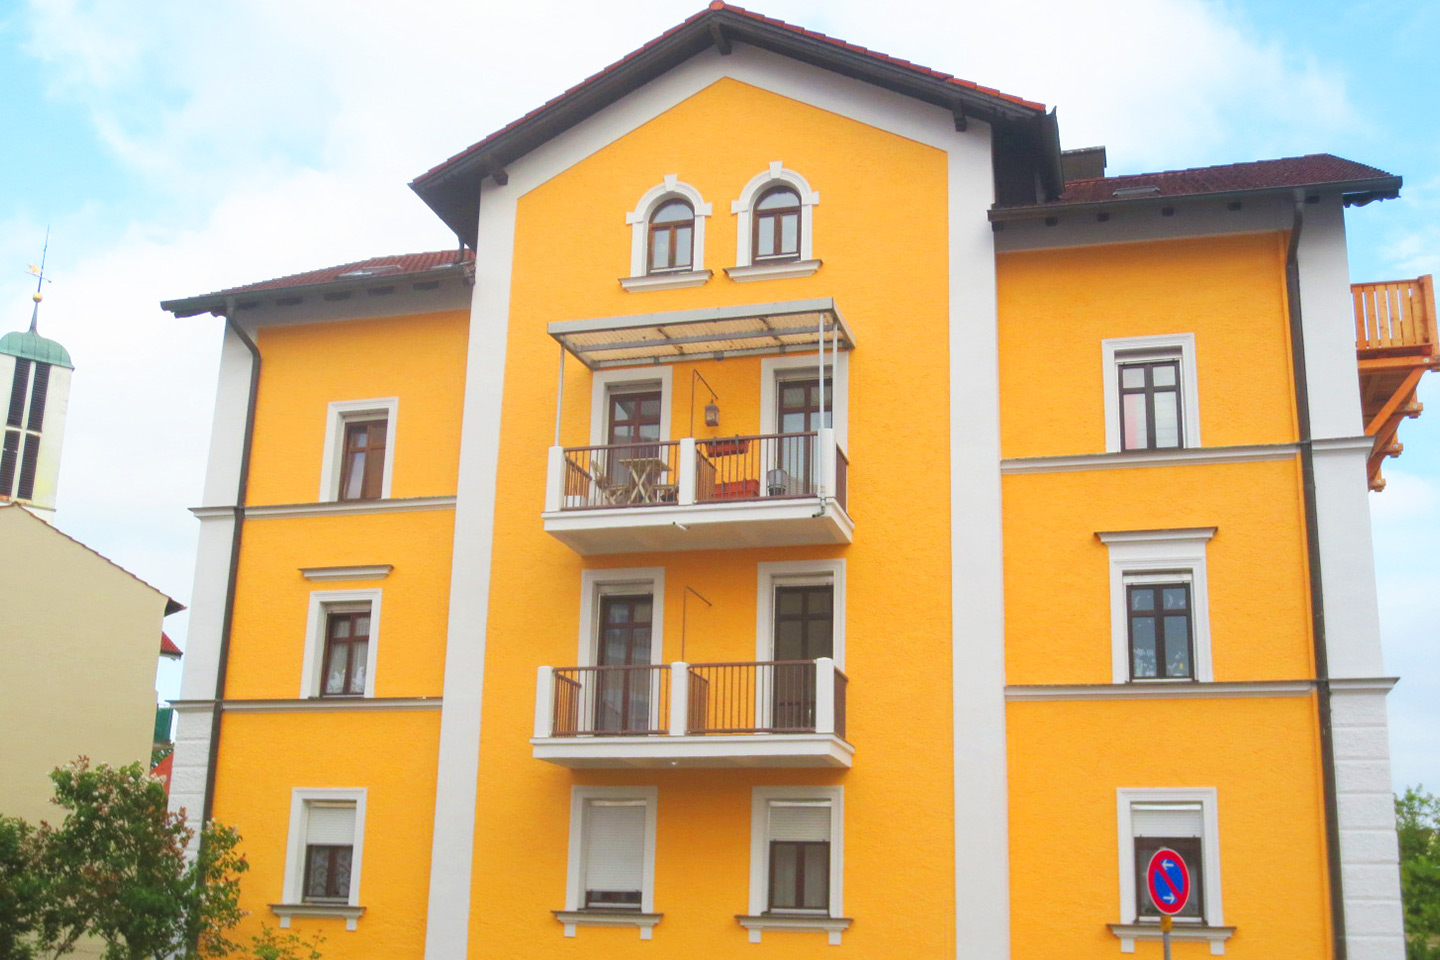 Mehrfamilienhaus gelb